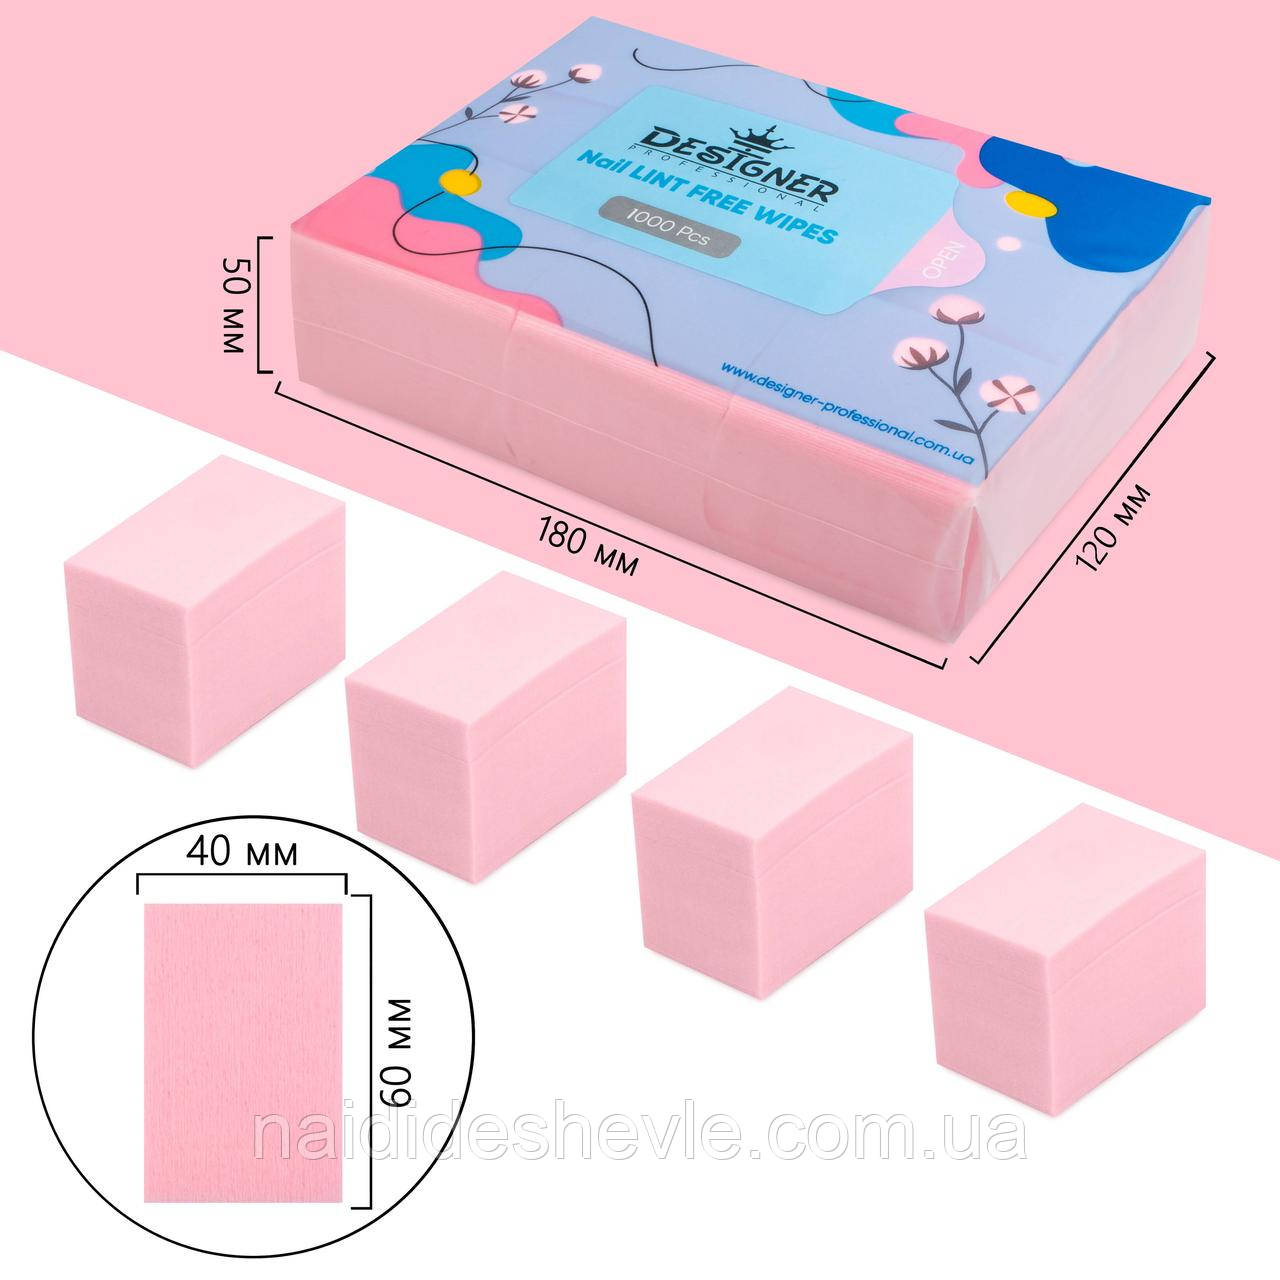 Безворсові одноразові серветки Дизайнер/ кольорові, 1000 шт в упаковці Рожевий